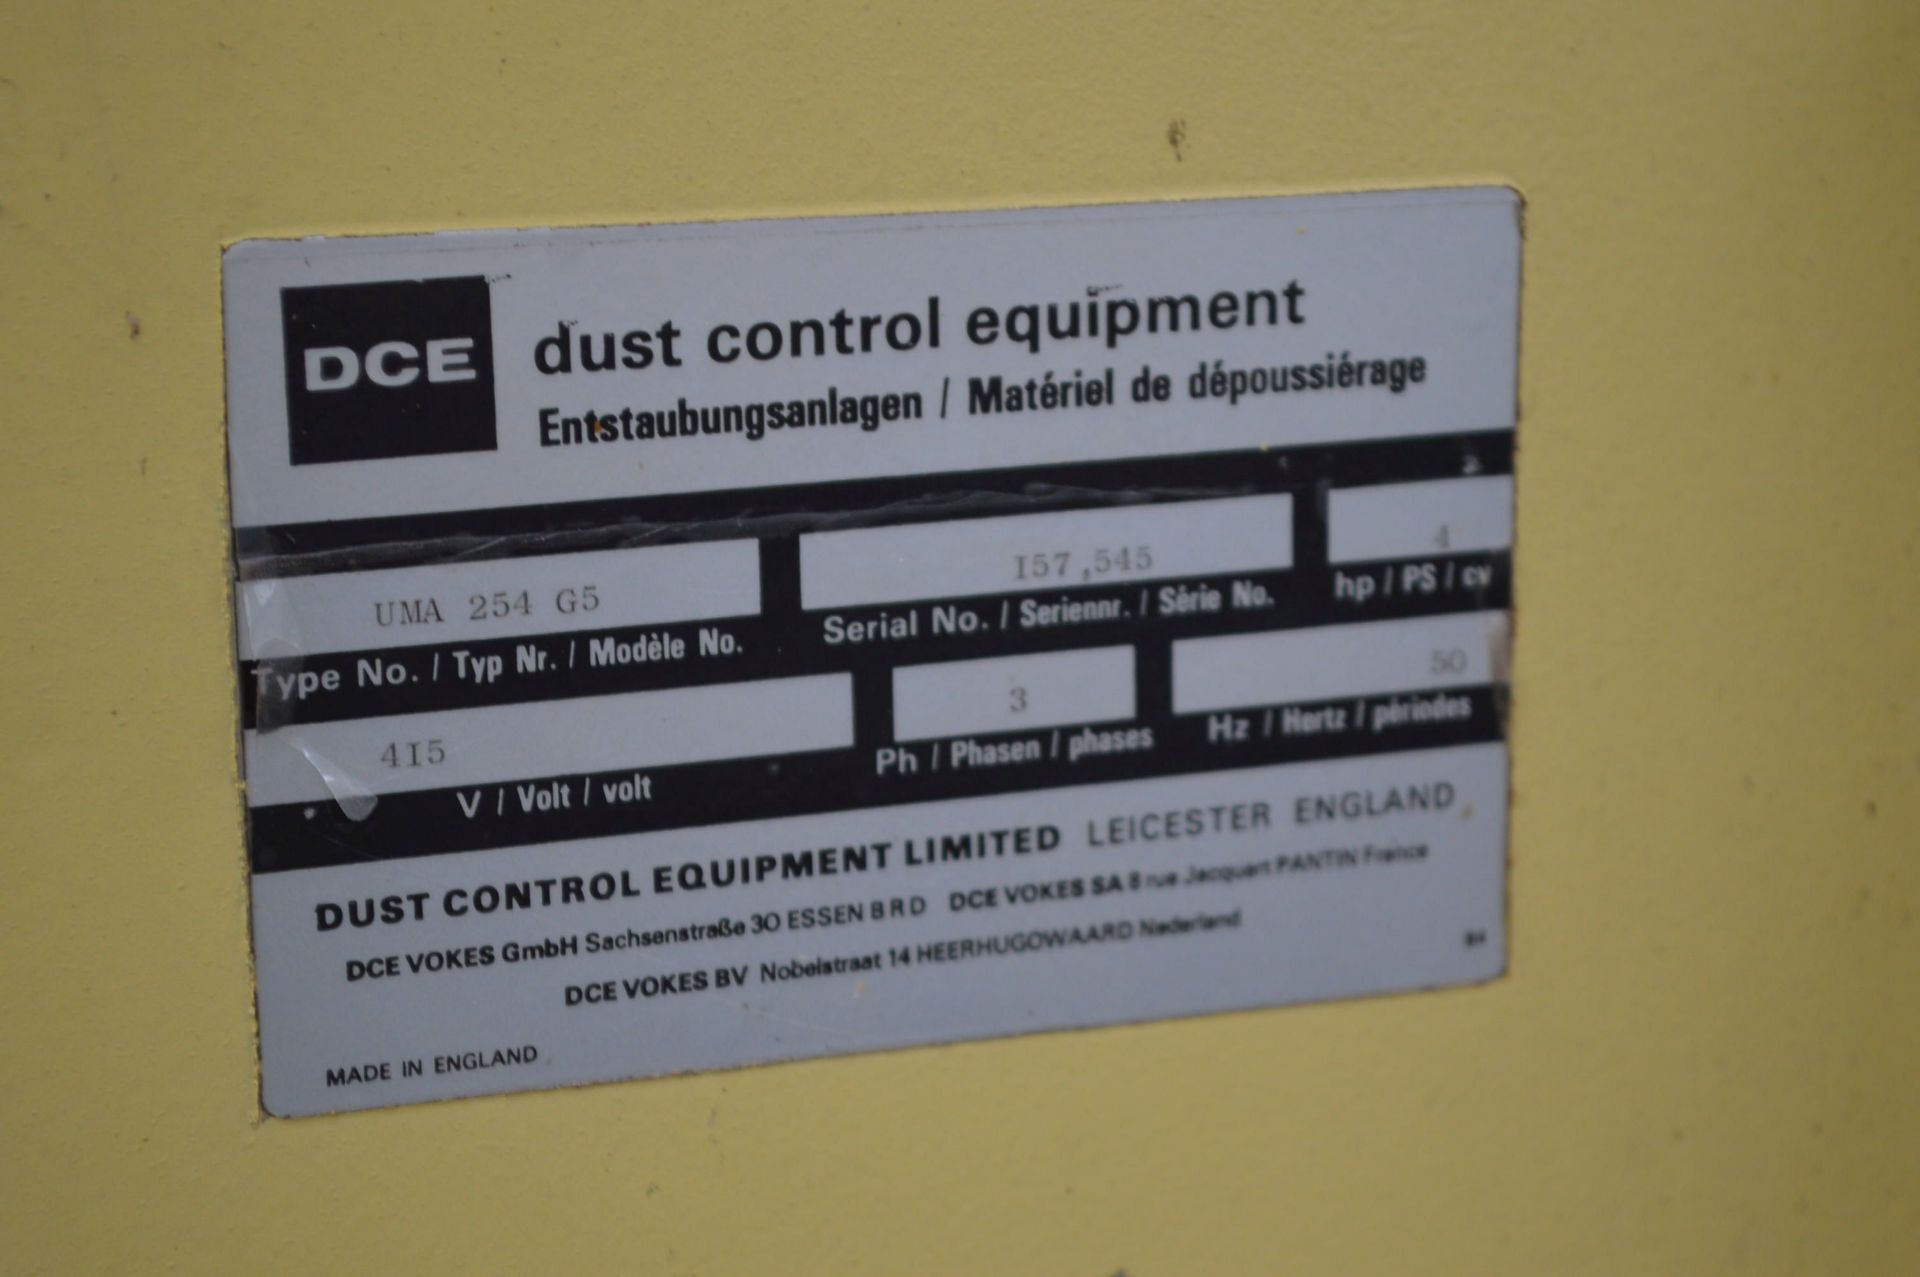 DCE UMA254G5 Dust Collection Unit, serial no. 1575 - Bild 2 aus 2